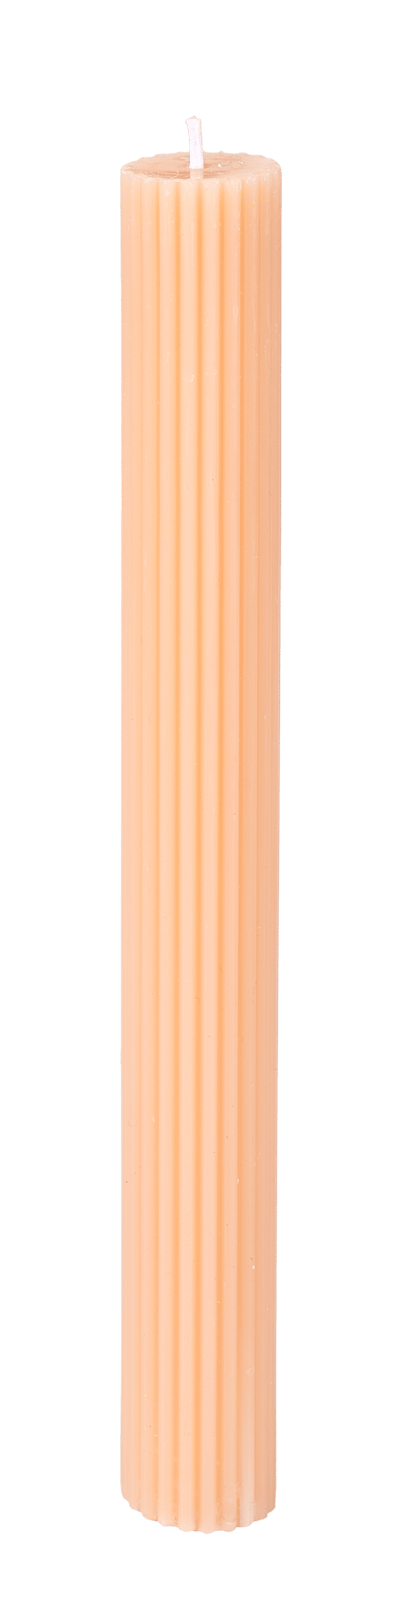 RUSTIC Candela ondulata arancione L 25 cm - Ø 2,6 cm